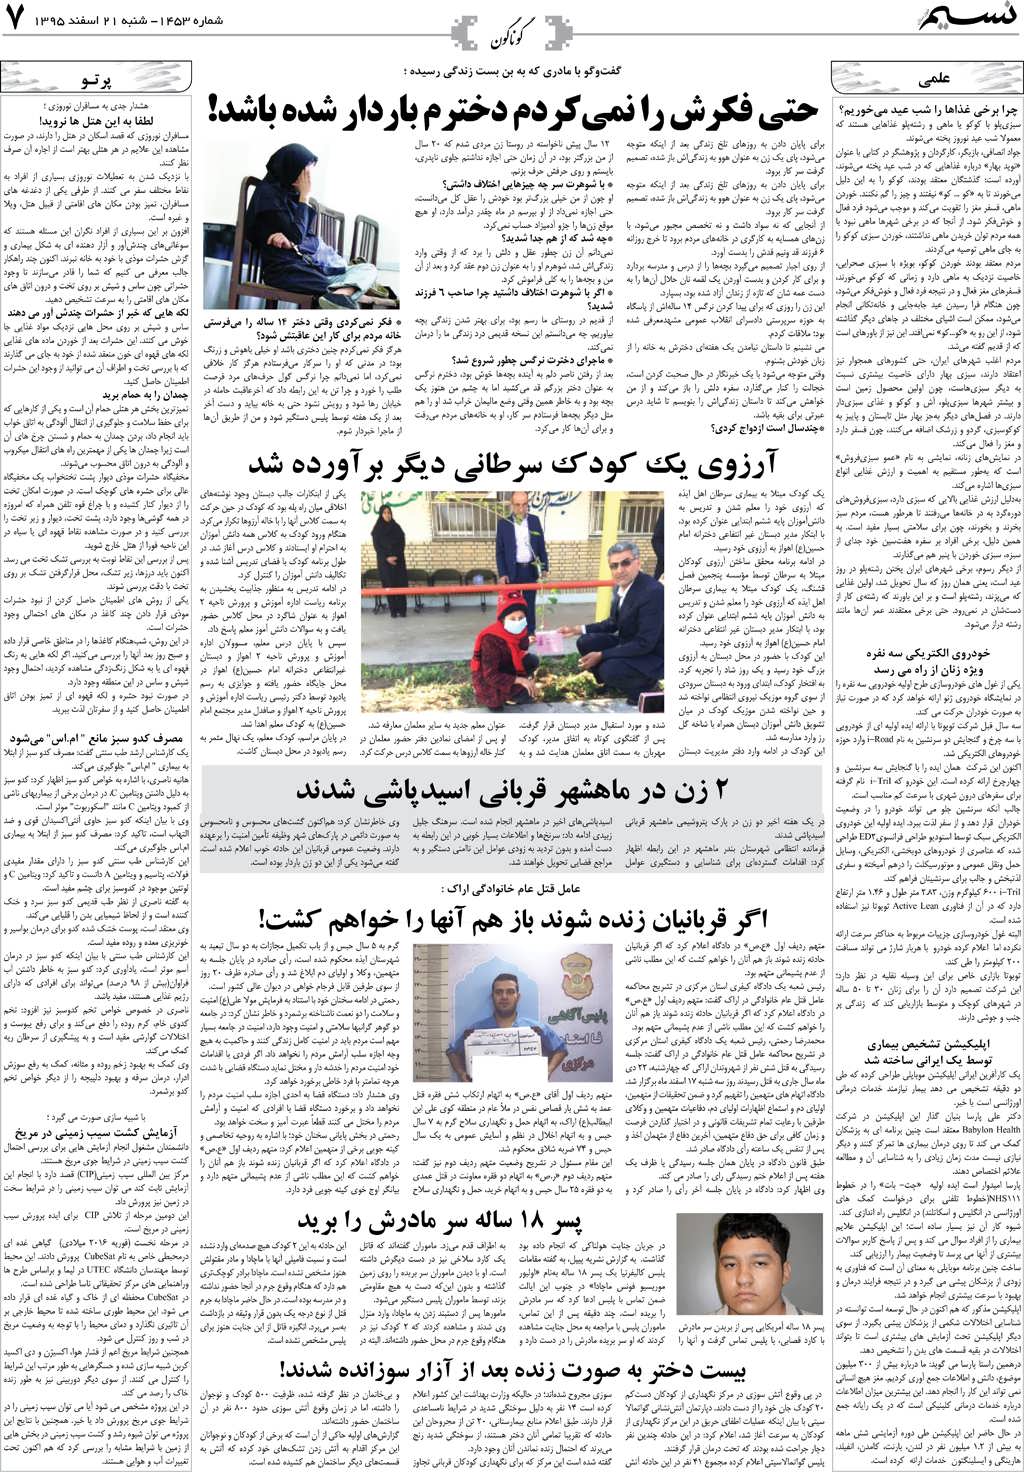 صفحه گوناگون روزنامه نسیم شماره 1453